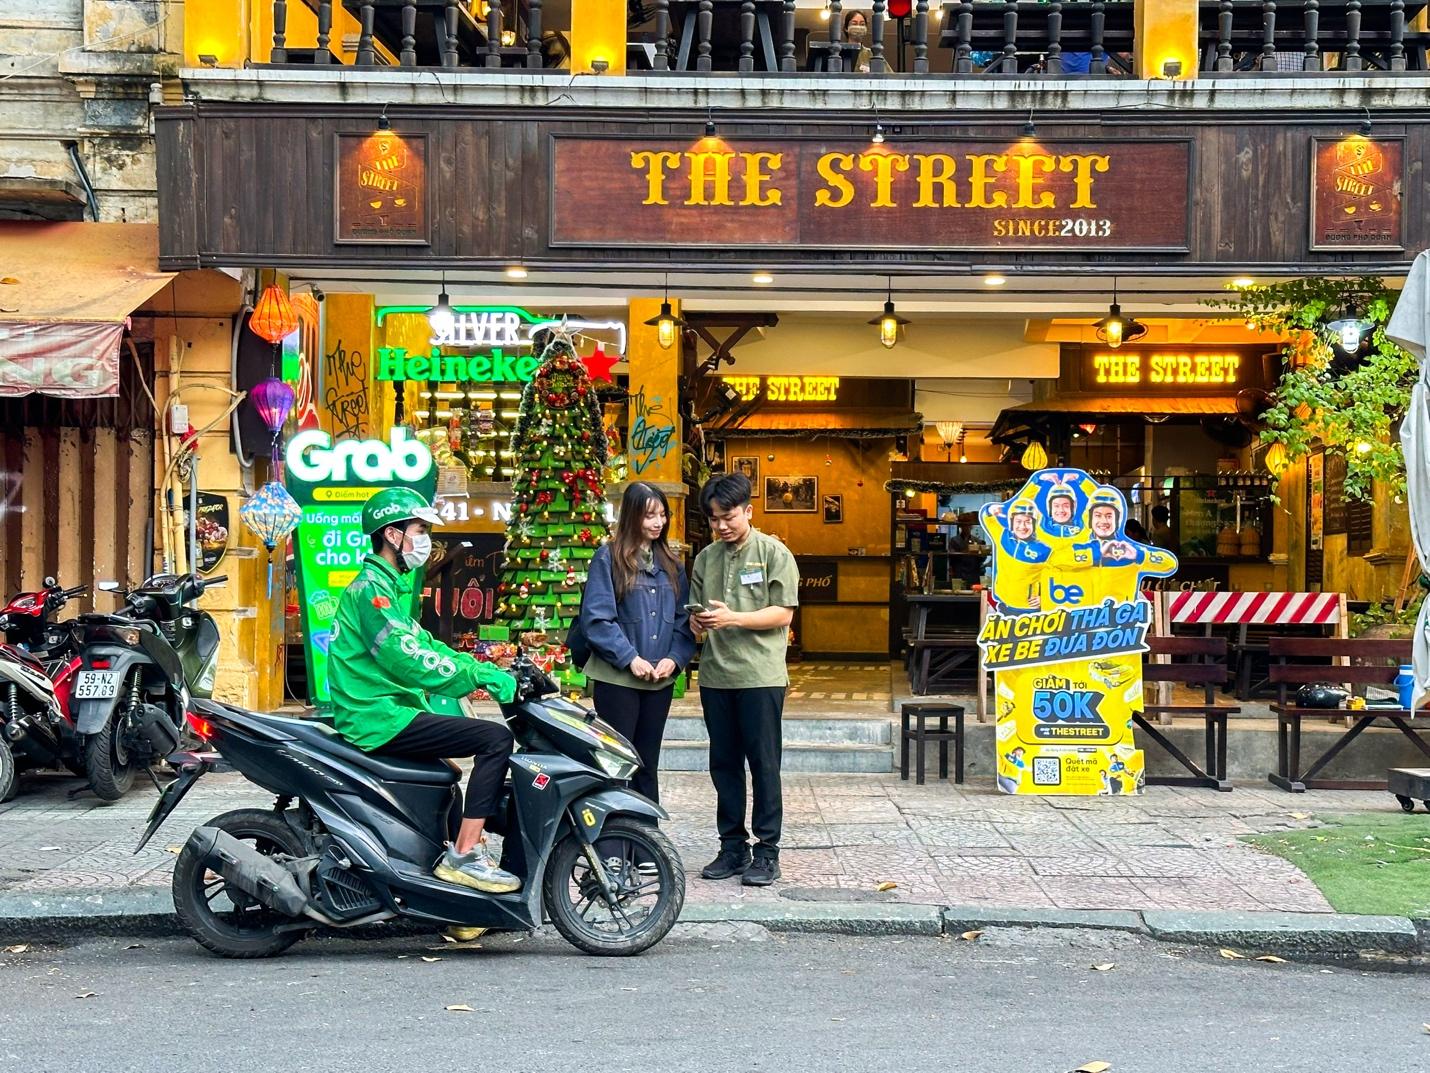 The Street - không gian ẩm thực độc đáo, lan toả văn hoá giao thông - Ảnh 3.